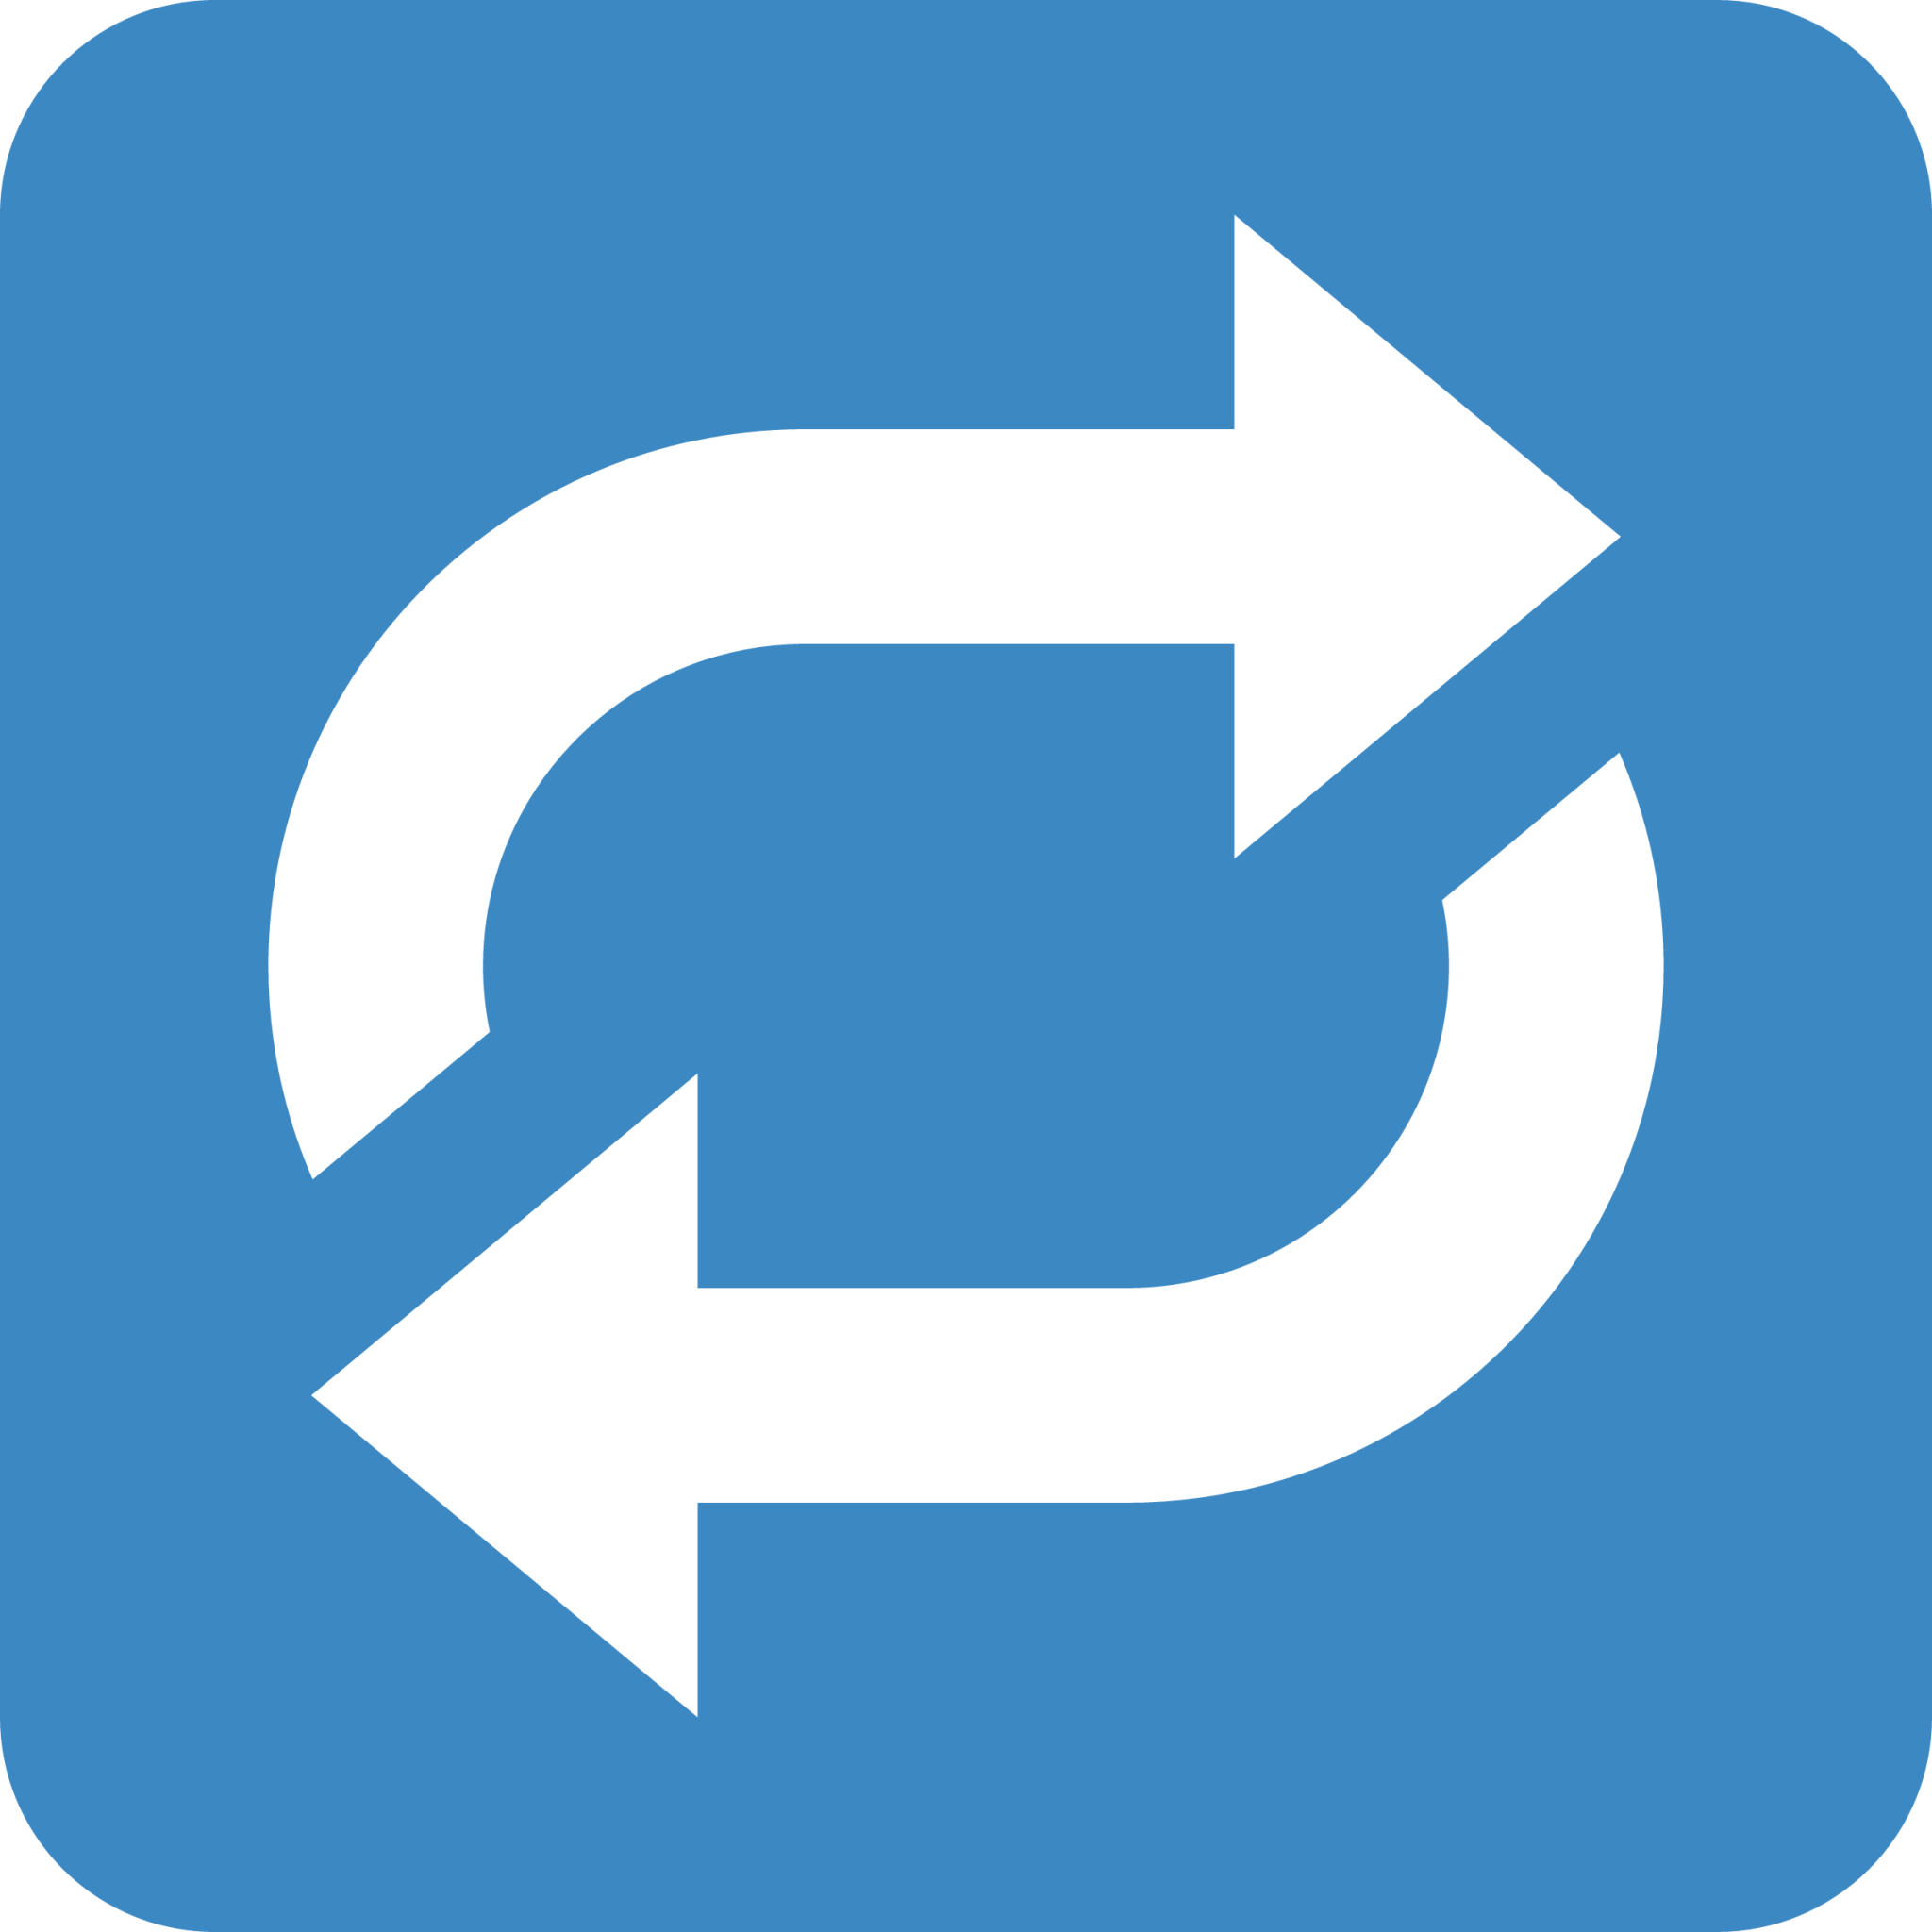 clockwise rightwards and leftwards open circle arrows emoji